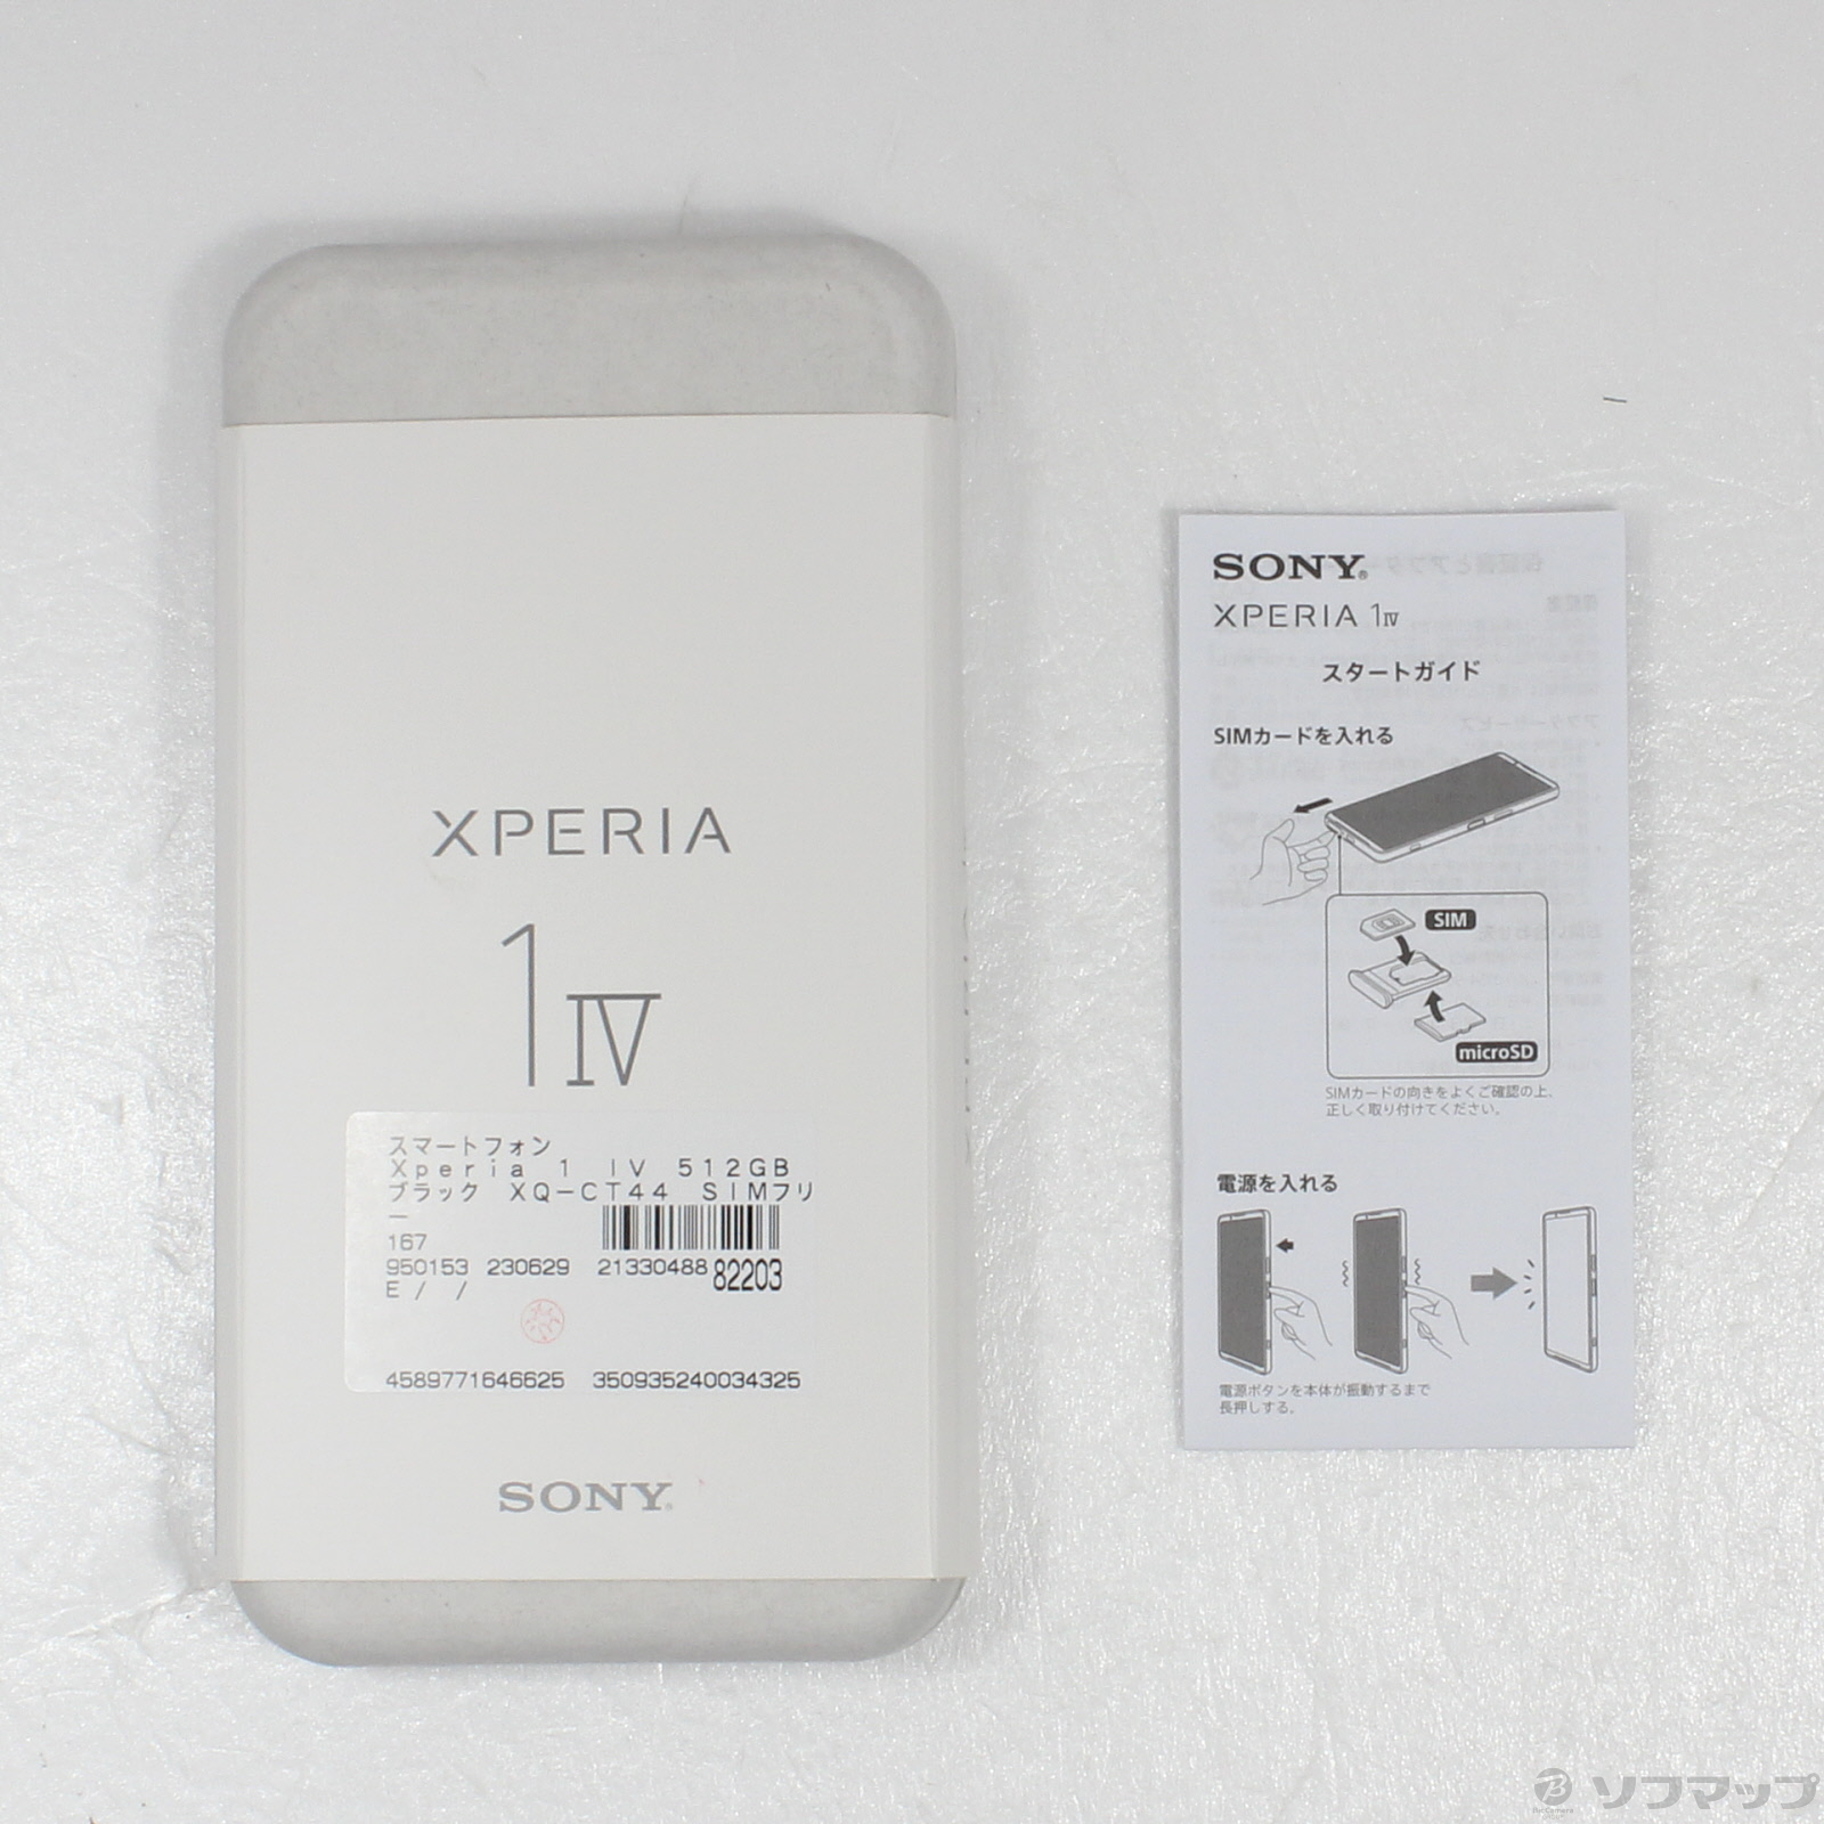 中古】Xperia 1 IV 512GB ブラック XQ-CT44 SIMフリー [2133048882203 